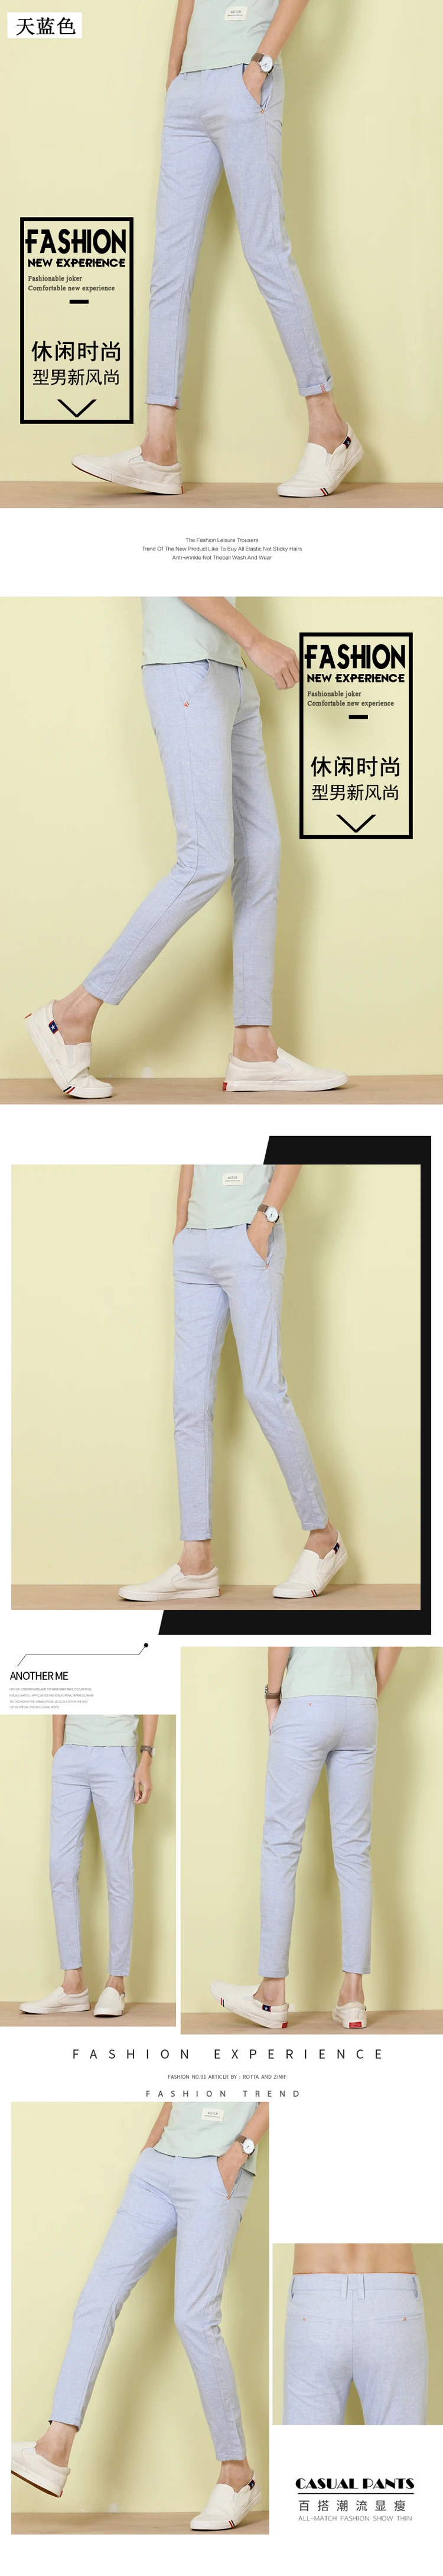 2018 летние хлопковые Для Мужчин's Повседневное брюки удобные белье дышащий Slim Fit Jogger стрейч длинные брюки мужские 702